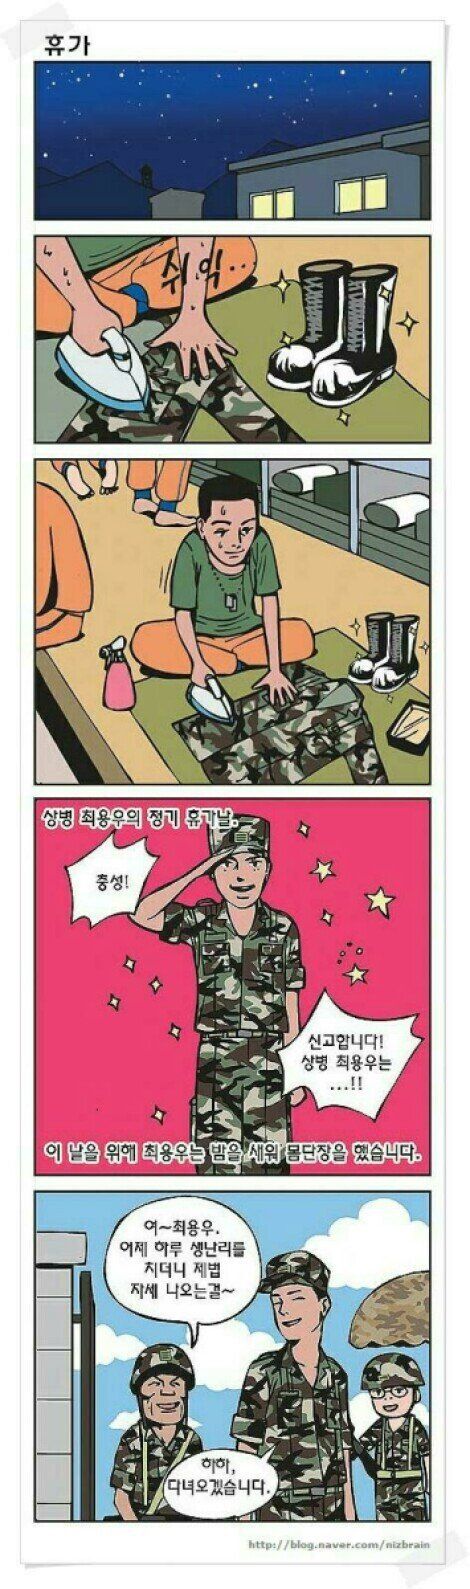 휴가나온 군인 공감만화.jpg 